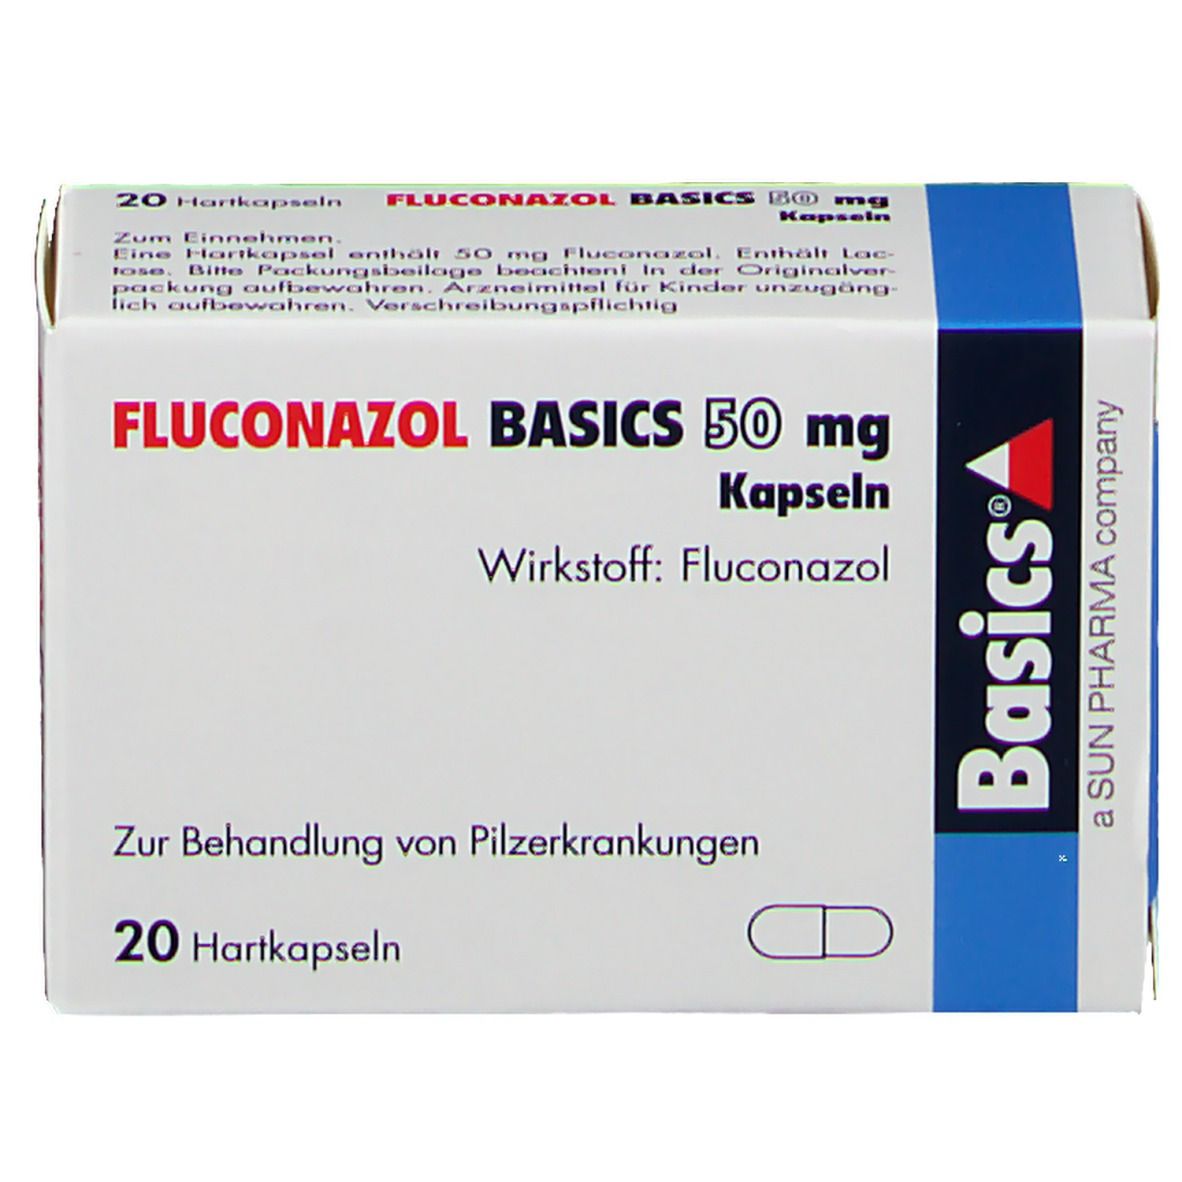 FLUCONAZOL BASICS 50 mg